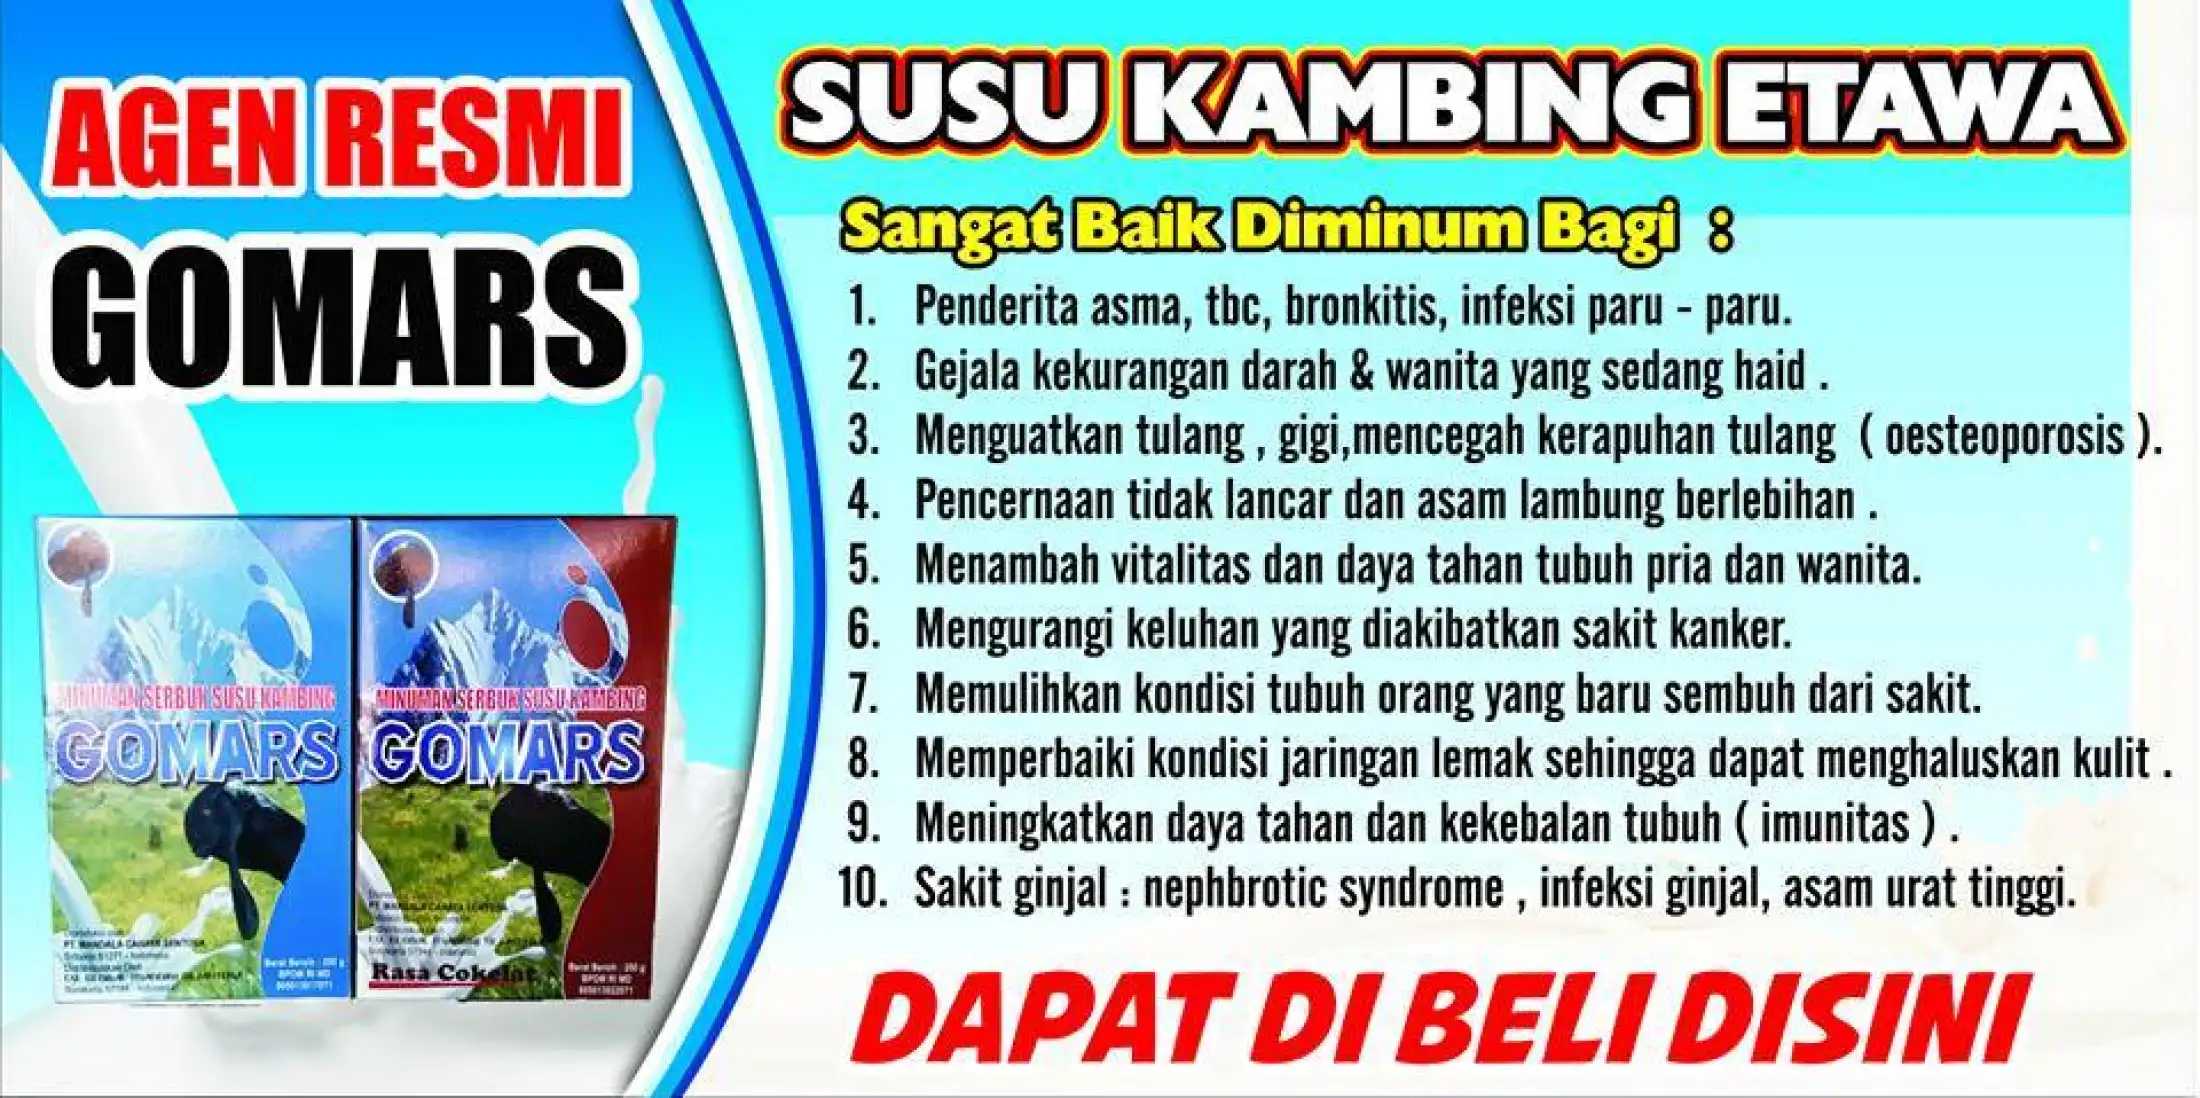 Gomars Susu Kambing Etawa Original Bubuk Instan Murni Asli Tinggi Kalsium Protein Nutrisi Gizi Penggemuk Penambah Berat Badan Meningkatkan Nafsu Makan Dewasa Anak Formula Terbaik Lazada Indonesia